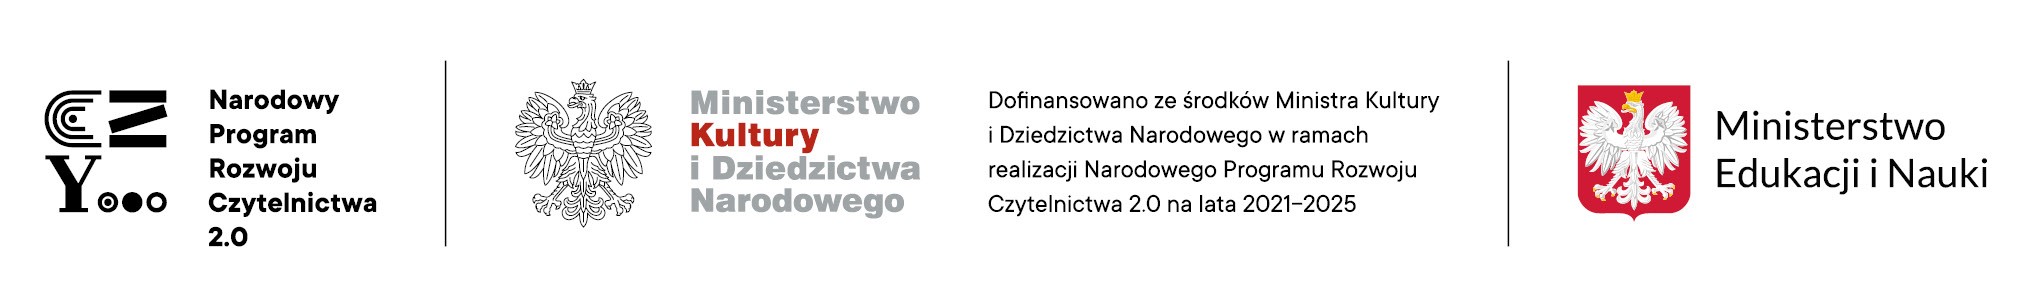 logotypy: Narodowy Program Rozwoju Czytelnictwa 2.0, Ministerstwa Kultury i Dziedzictwa Narodowego, Ministerstwa Edukacji i Nauki